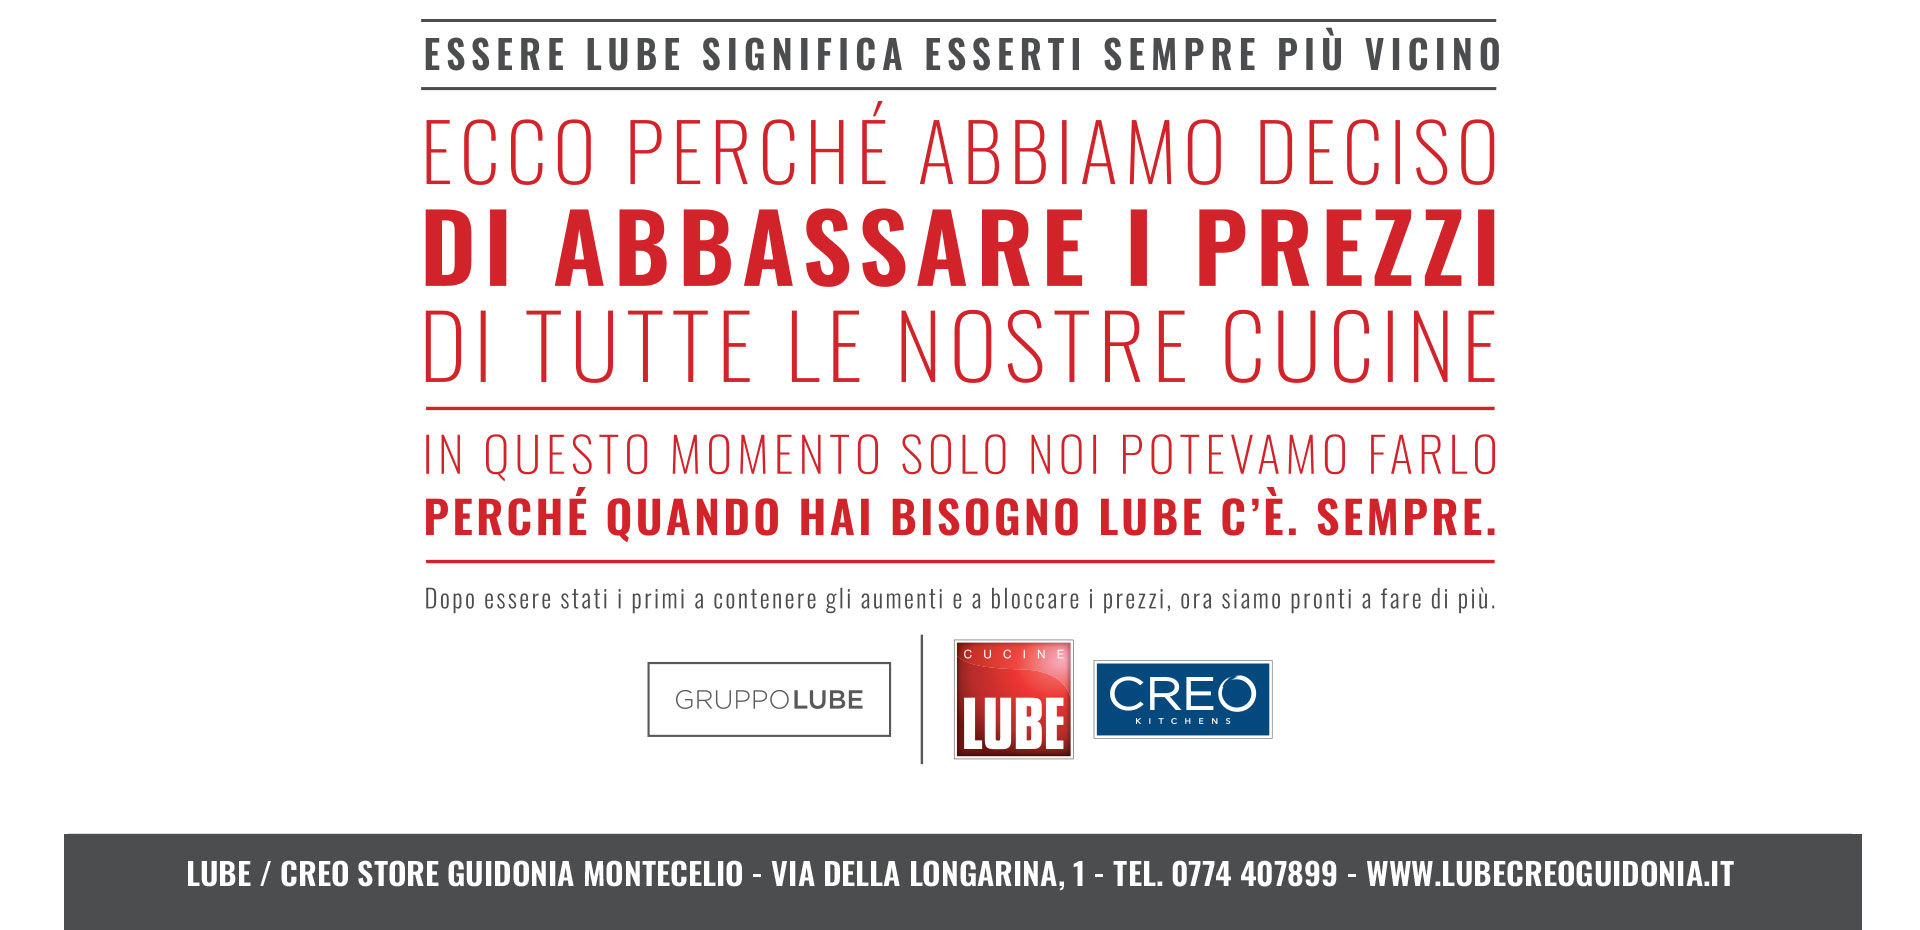 Abbiamo deciso di abbassare i prezzi! Approfitta della promozione Cucine LUBE e CREO Kitchens! - LUBE CREO Store Guidonia (Roma)